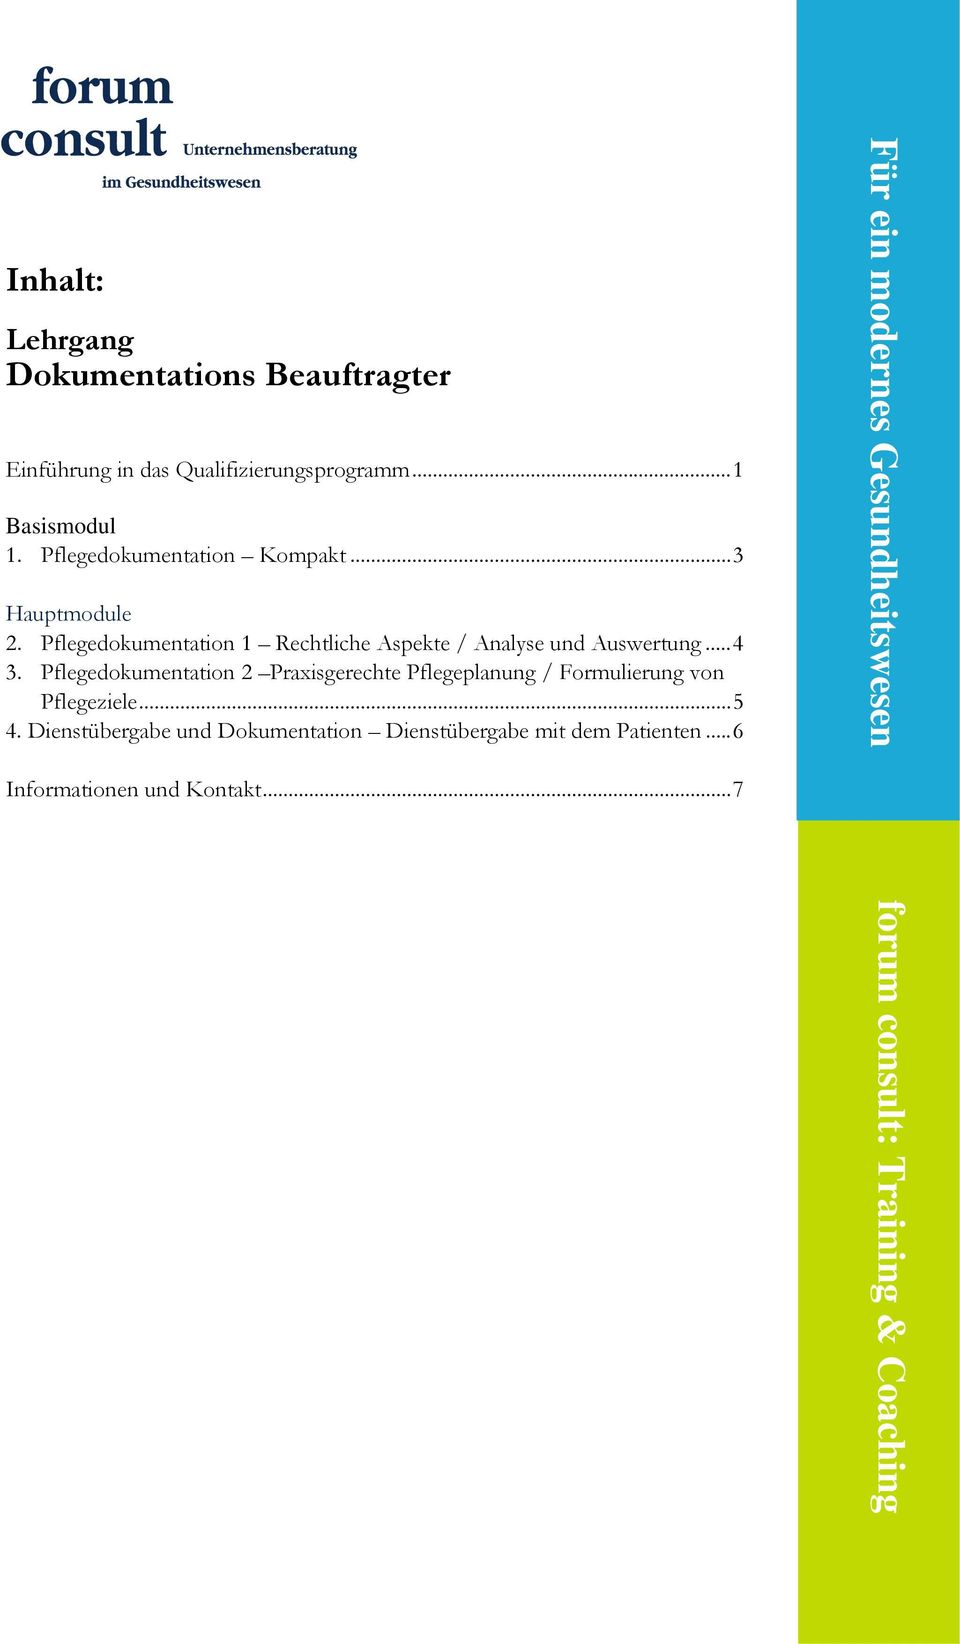 Pflegedokumentation 2 Praxisgerechte Pflegeplanung / Formulierung von Pflegeziele... 5 4.